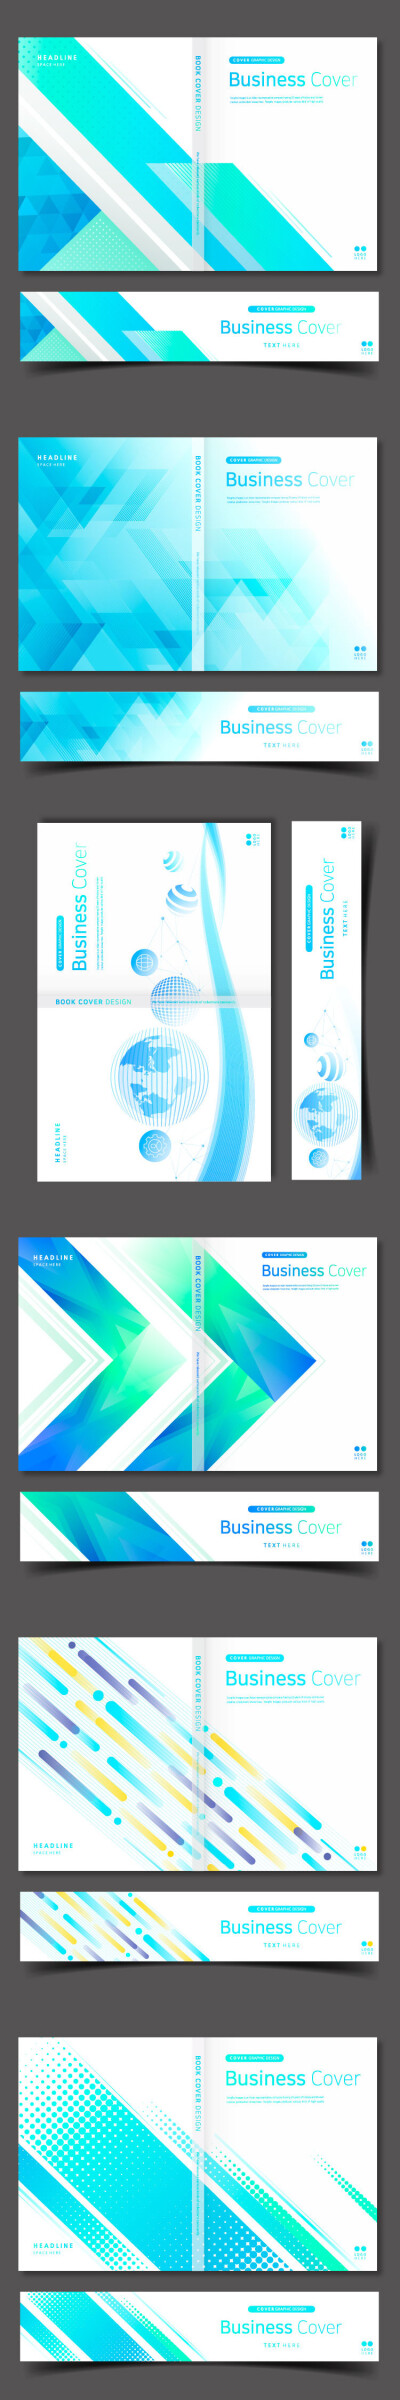 创意大气商务展会产品业务智能科技画册封面版式设计素材模板